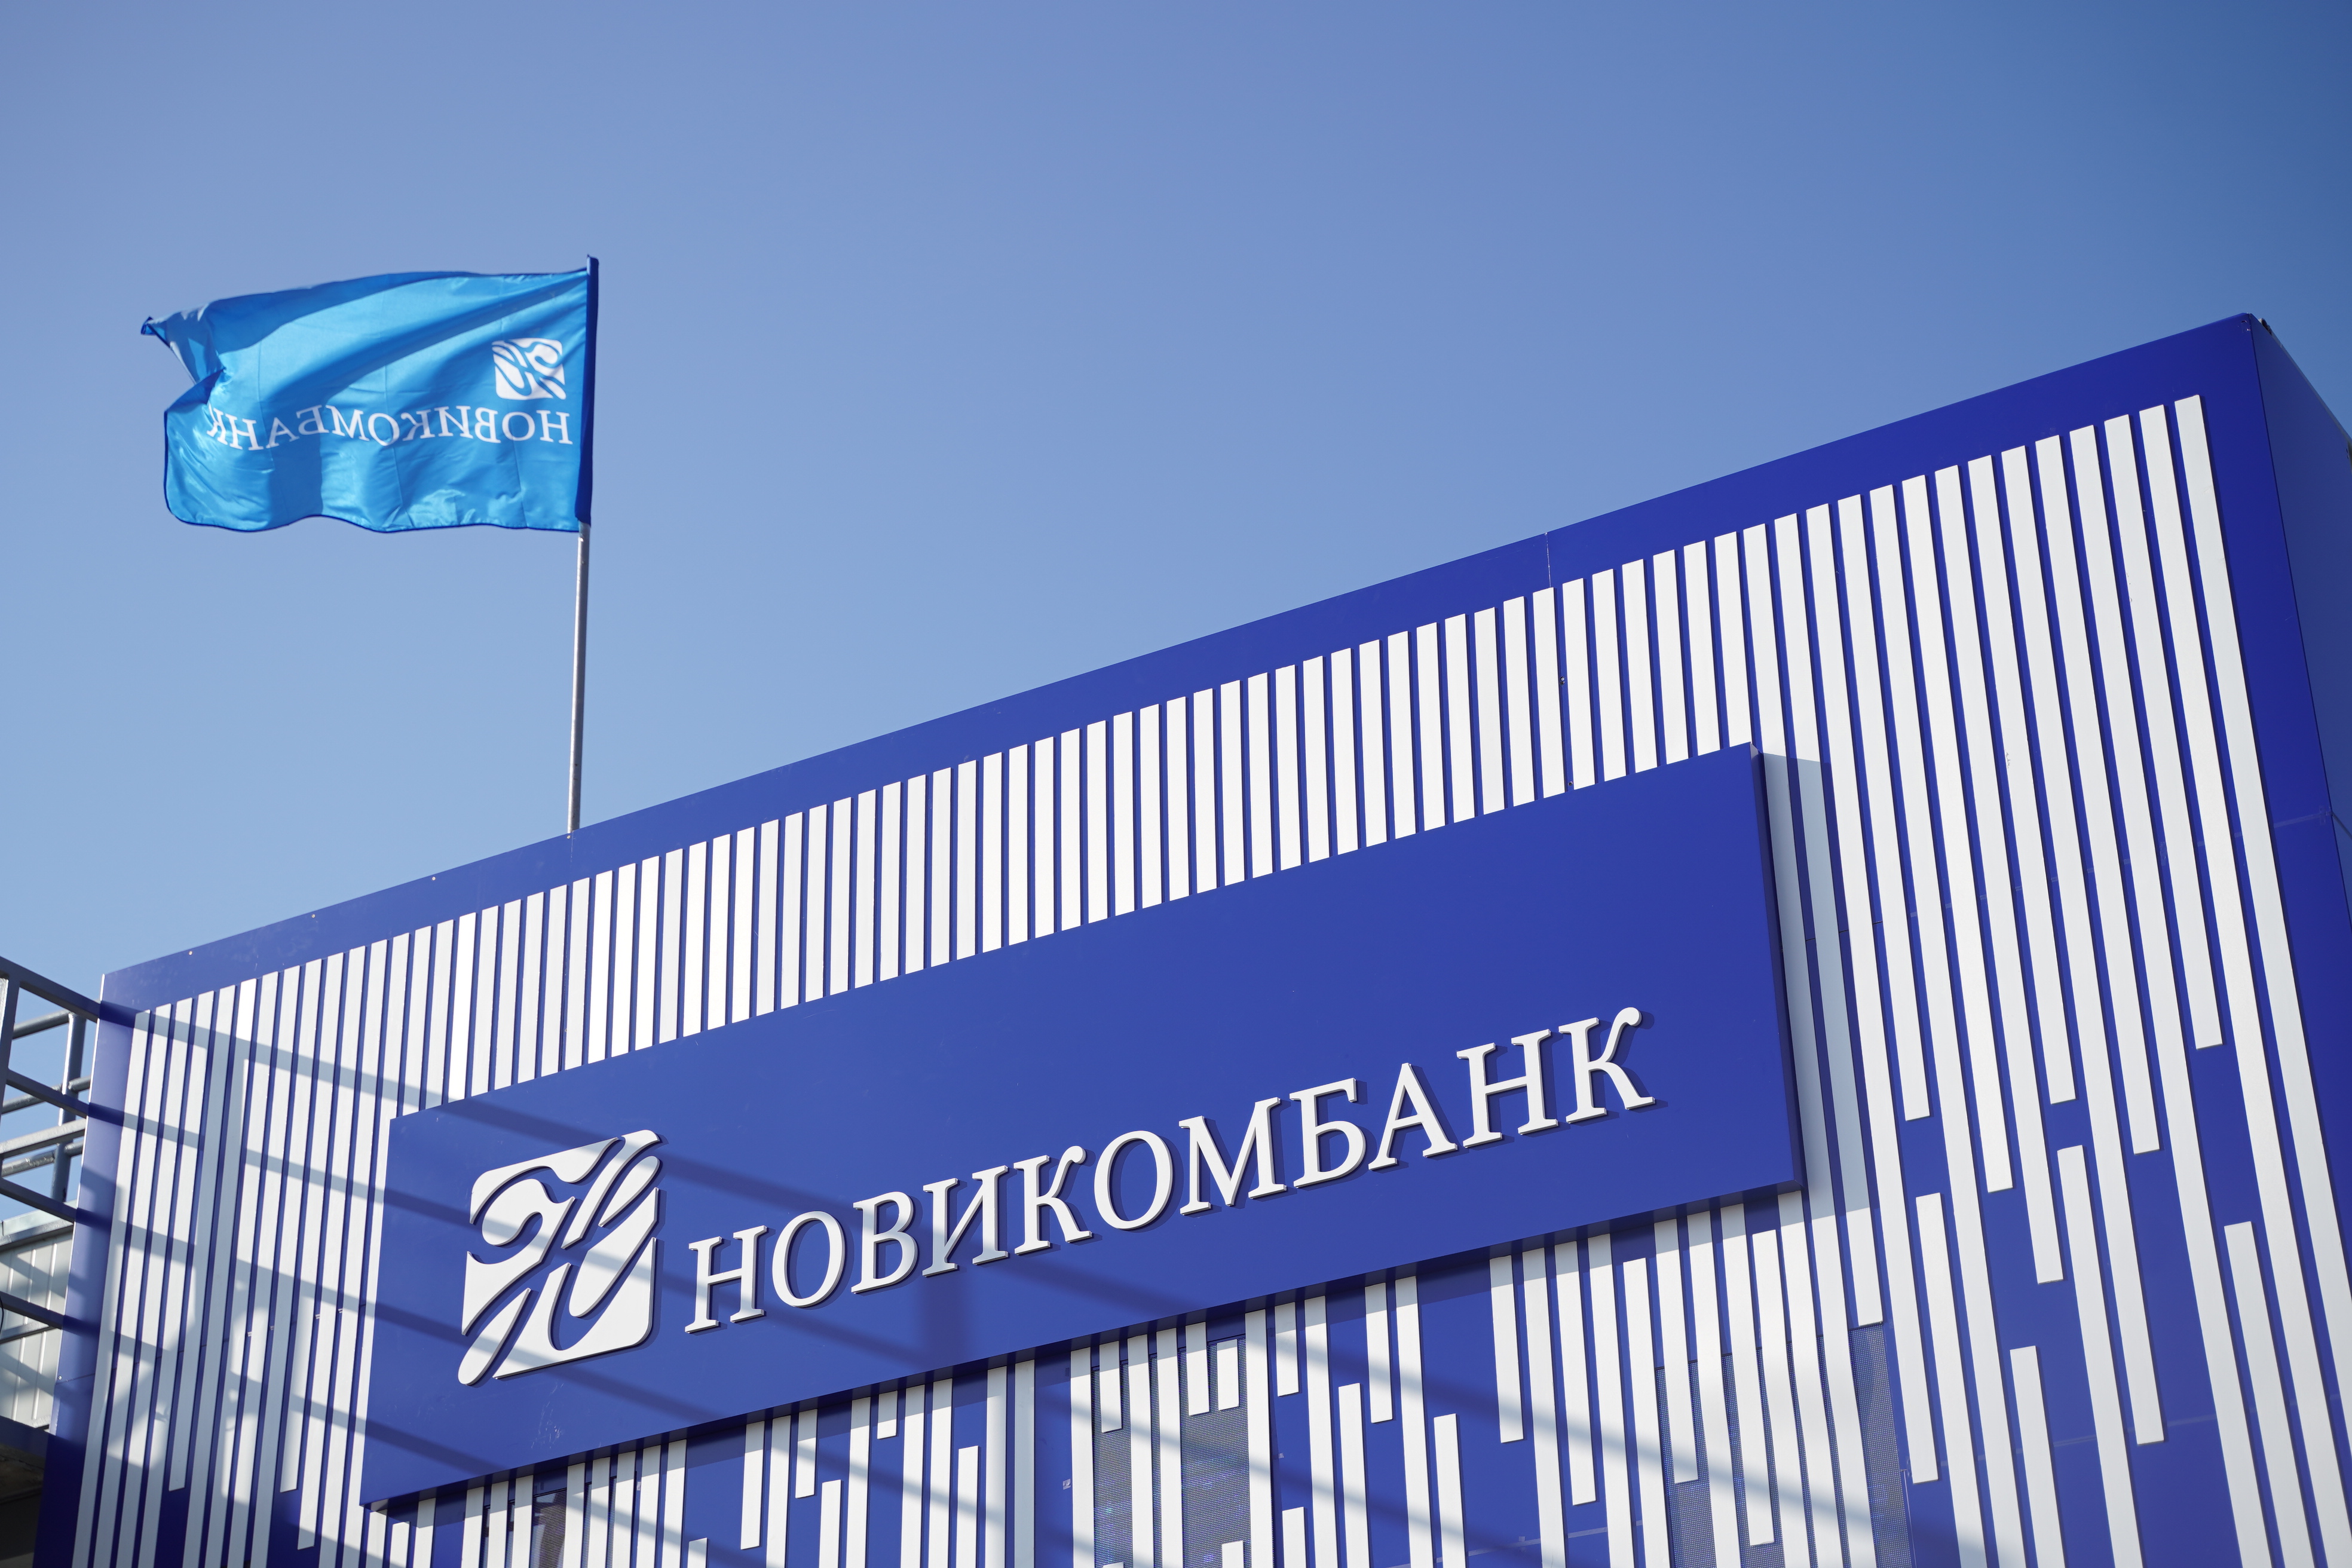 Новикомбанк присоединился к стандарту Ассоциации банков России по предупреждению обмана покупателей